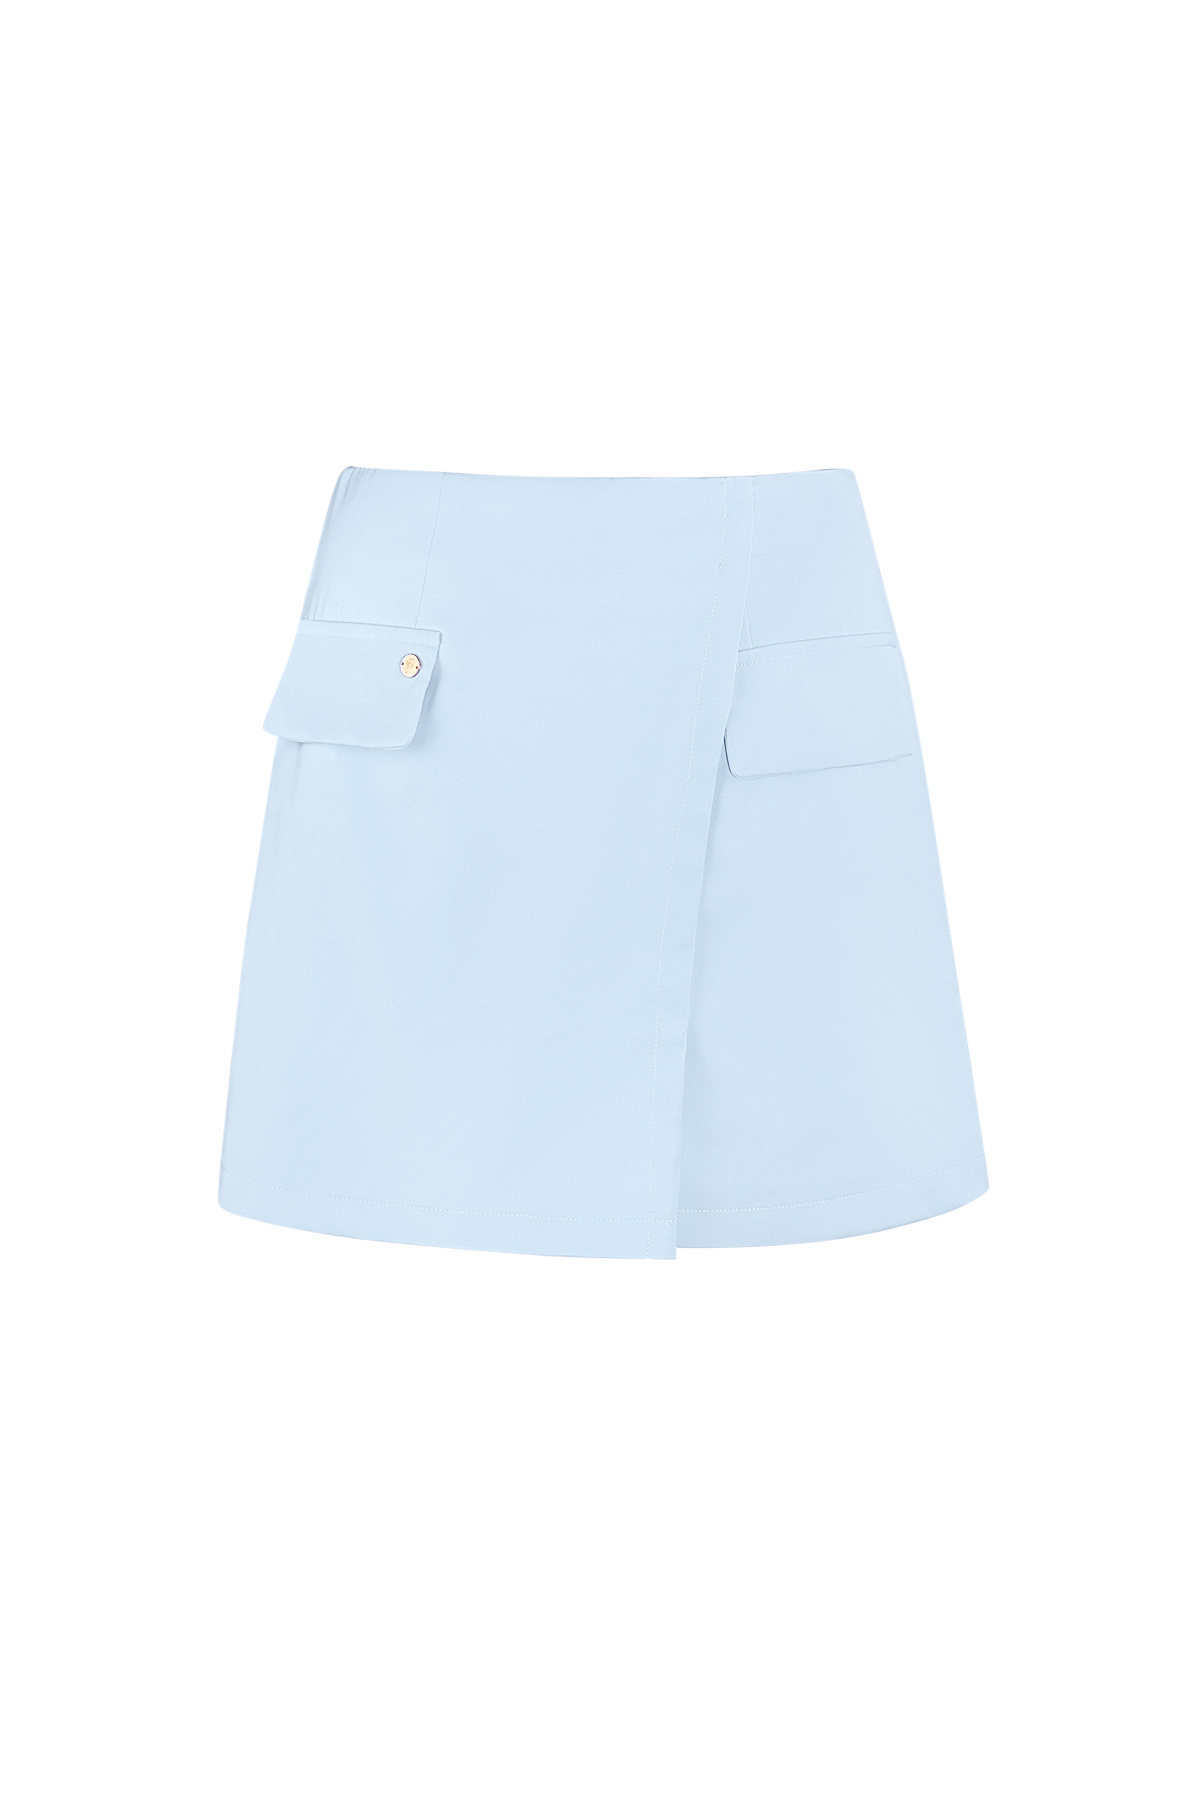 Plain pastel skirt - blue